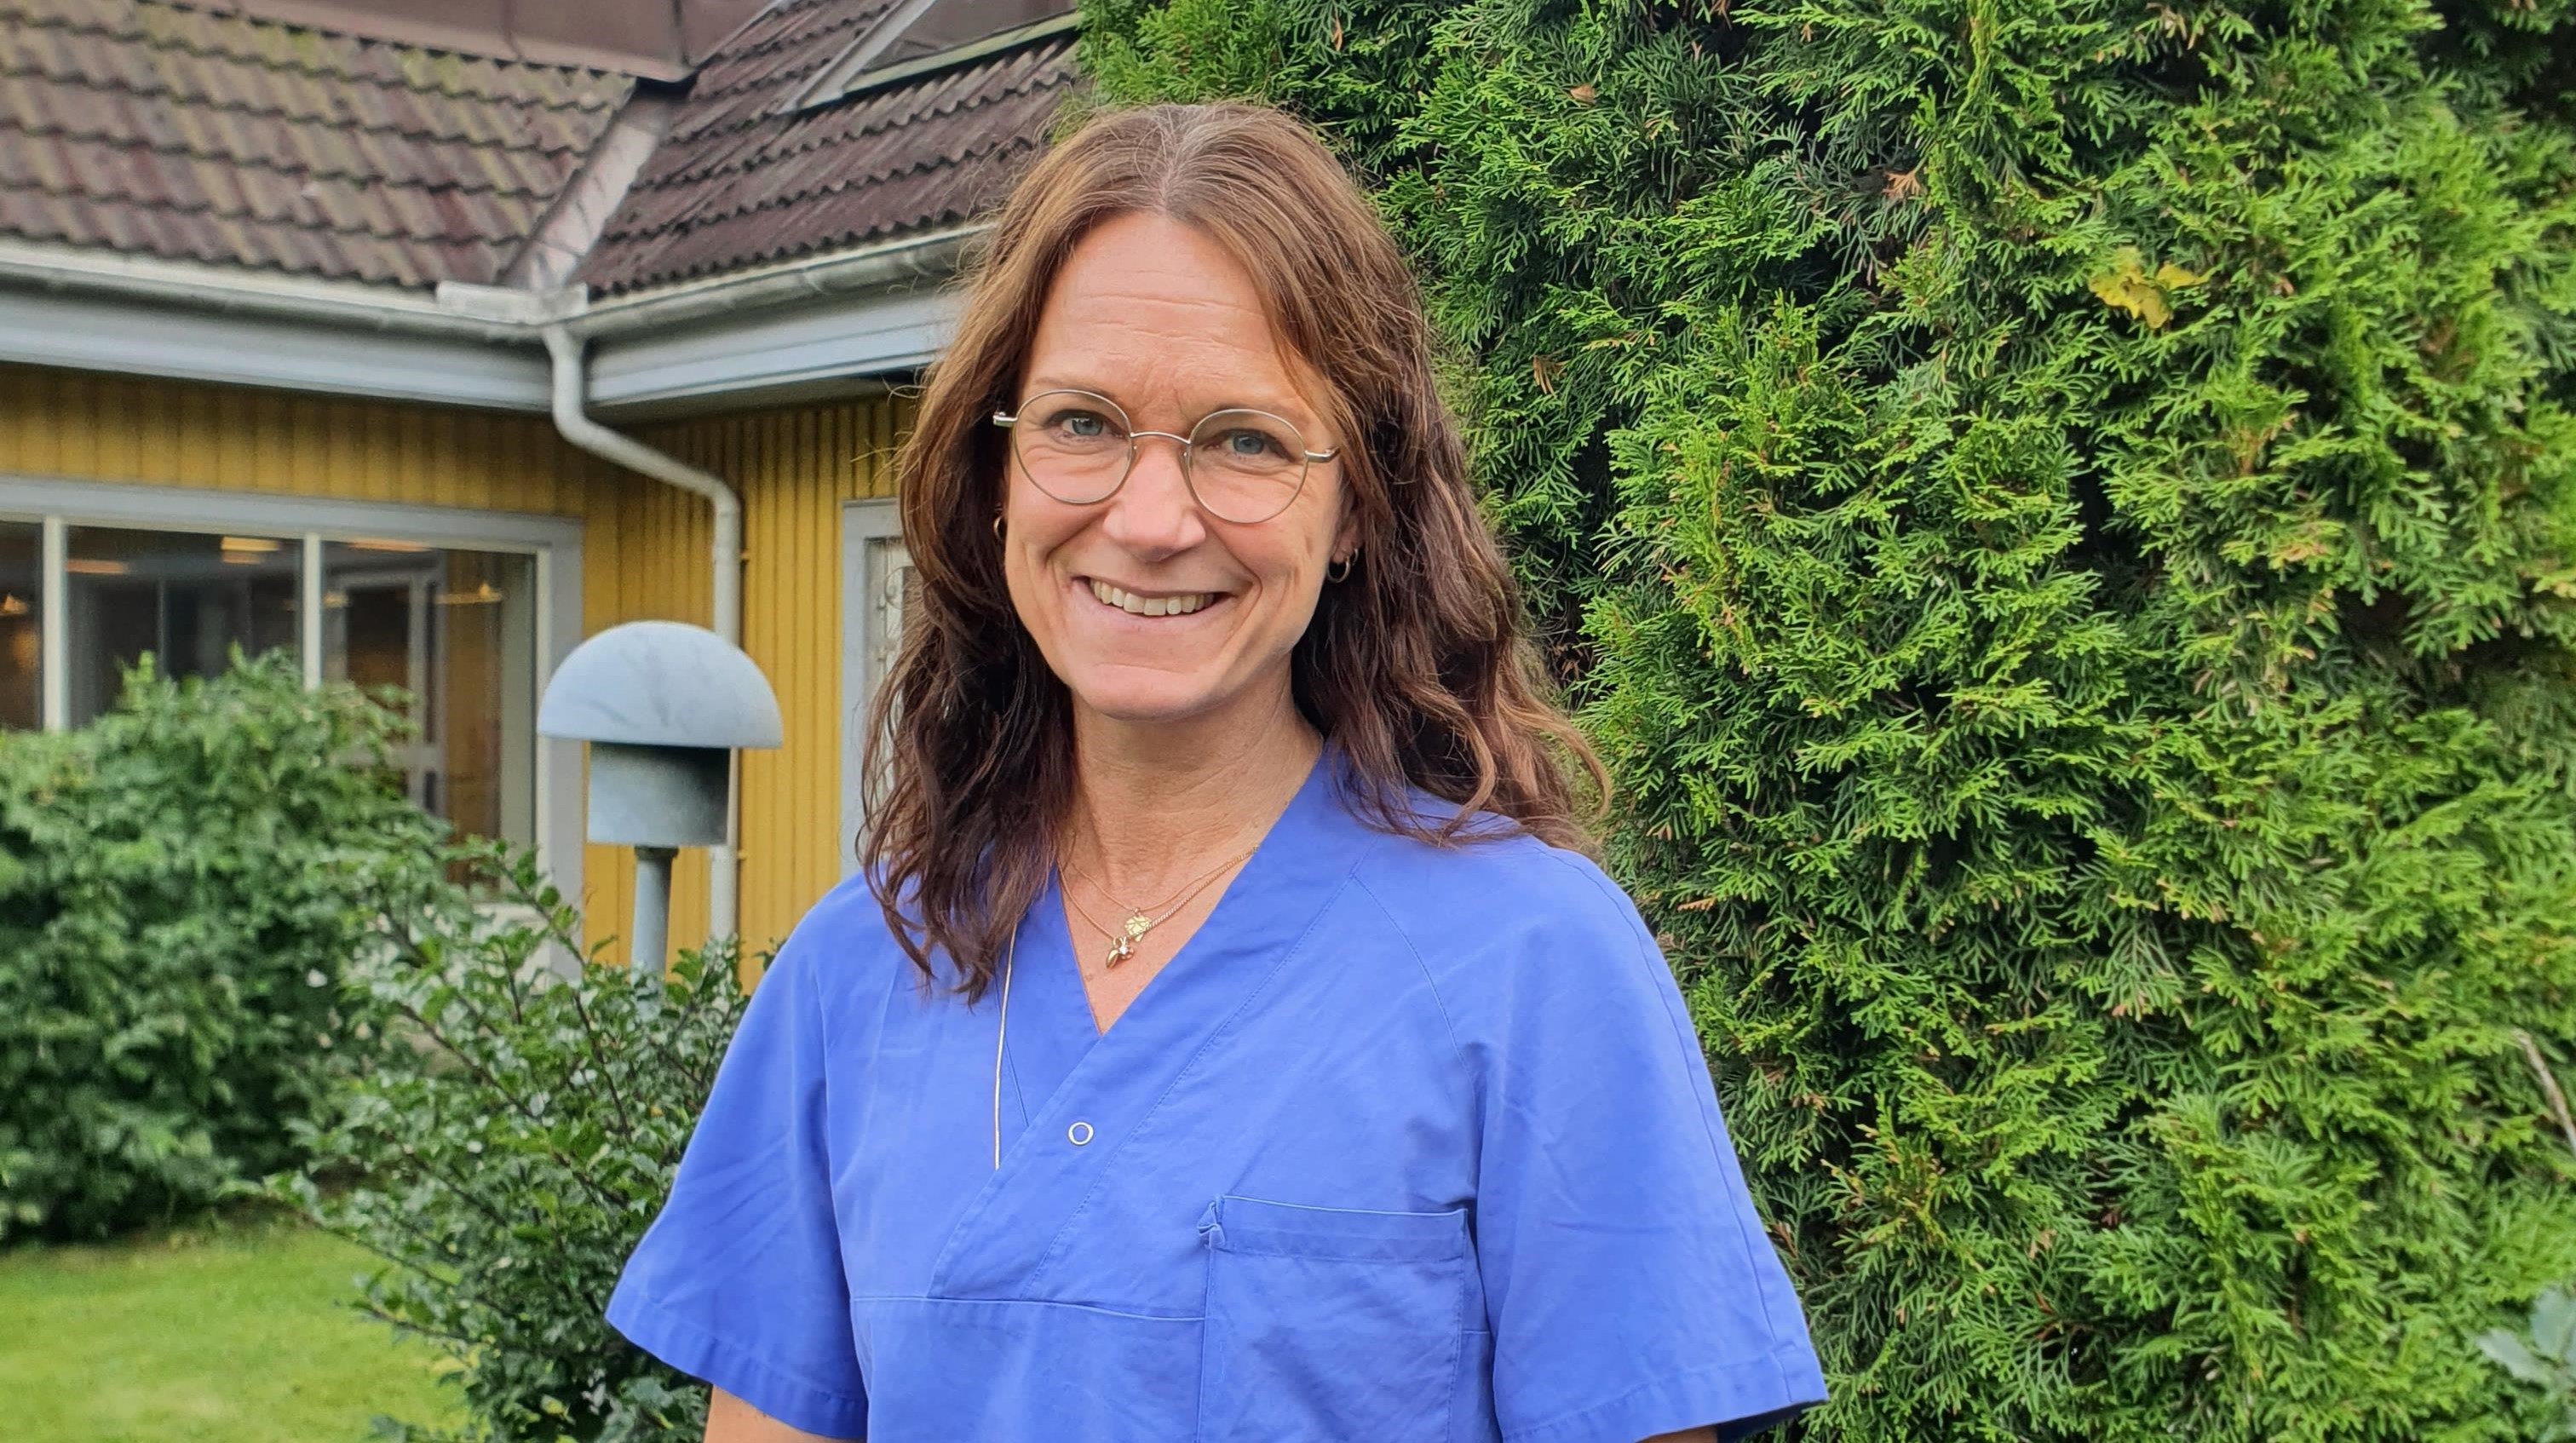 Johanna Weichbrodt iklädd blå sjukhuskläder står utomhus och ler mot kameran.